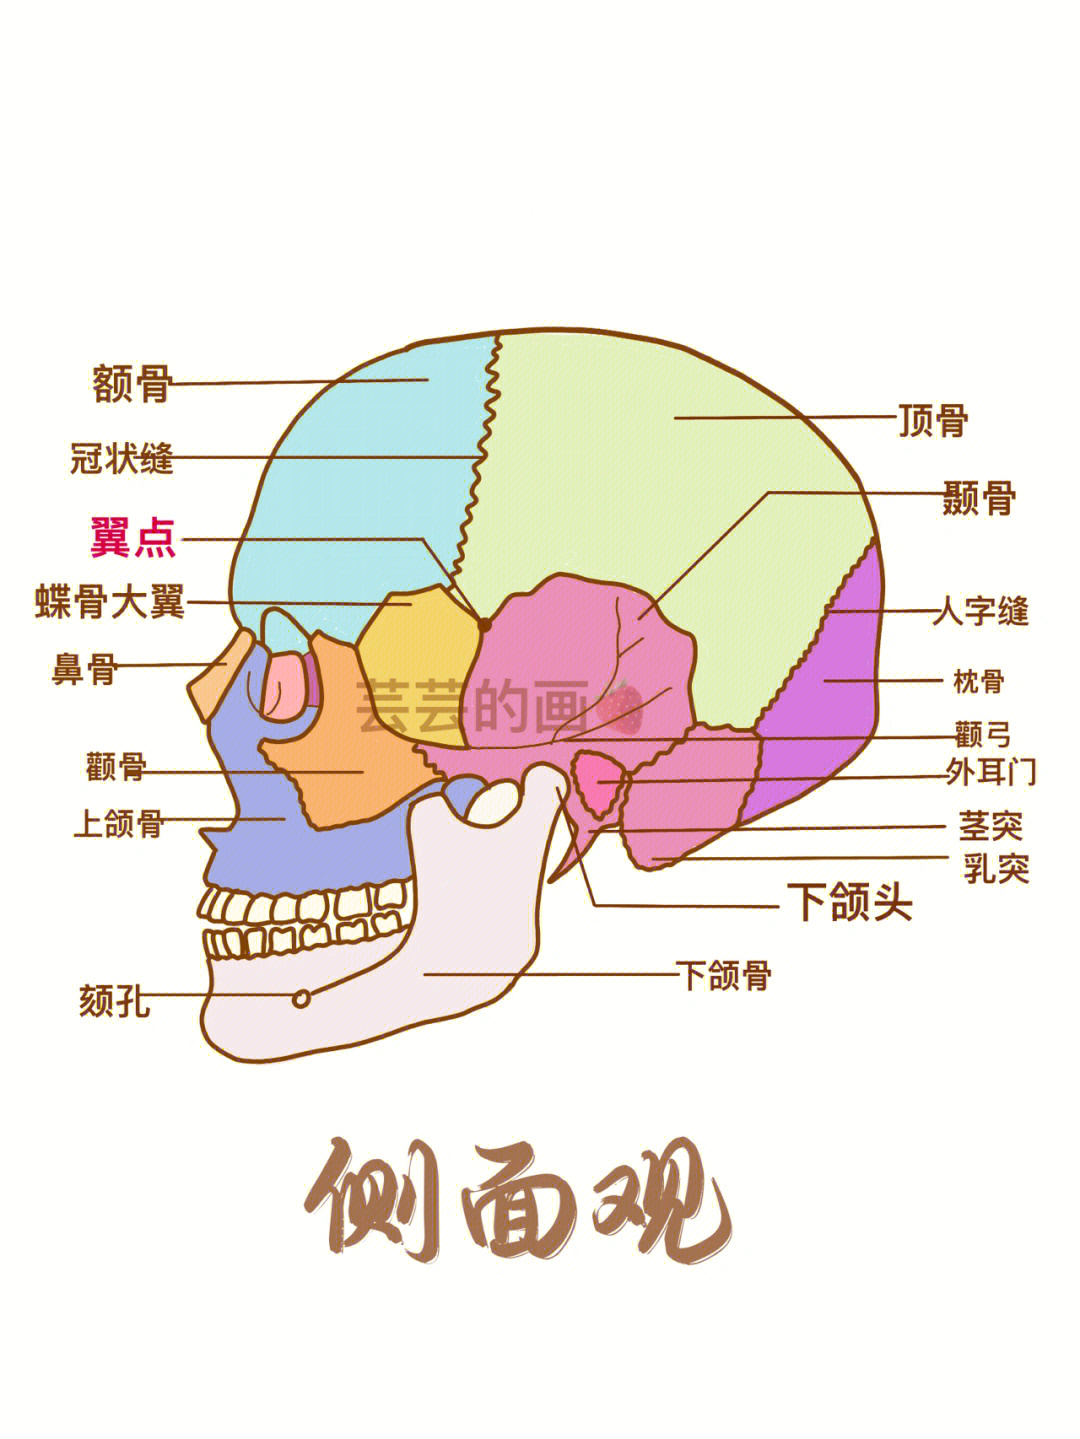 面颅骨的组成图解图片